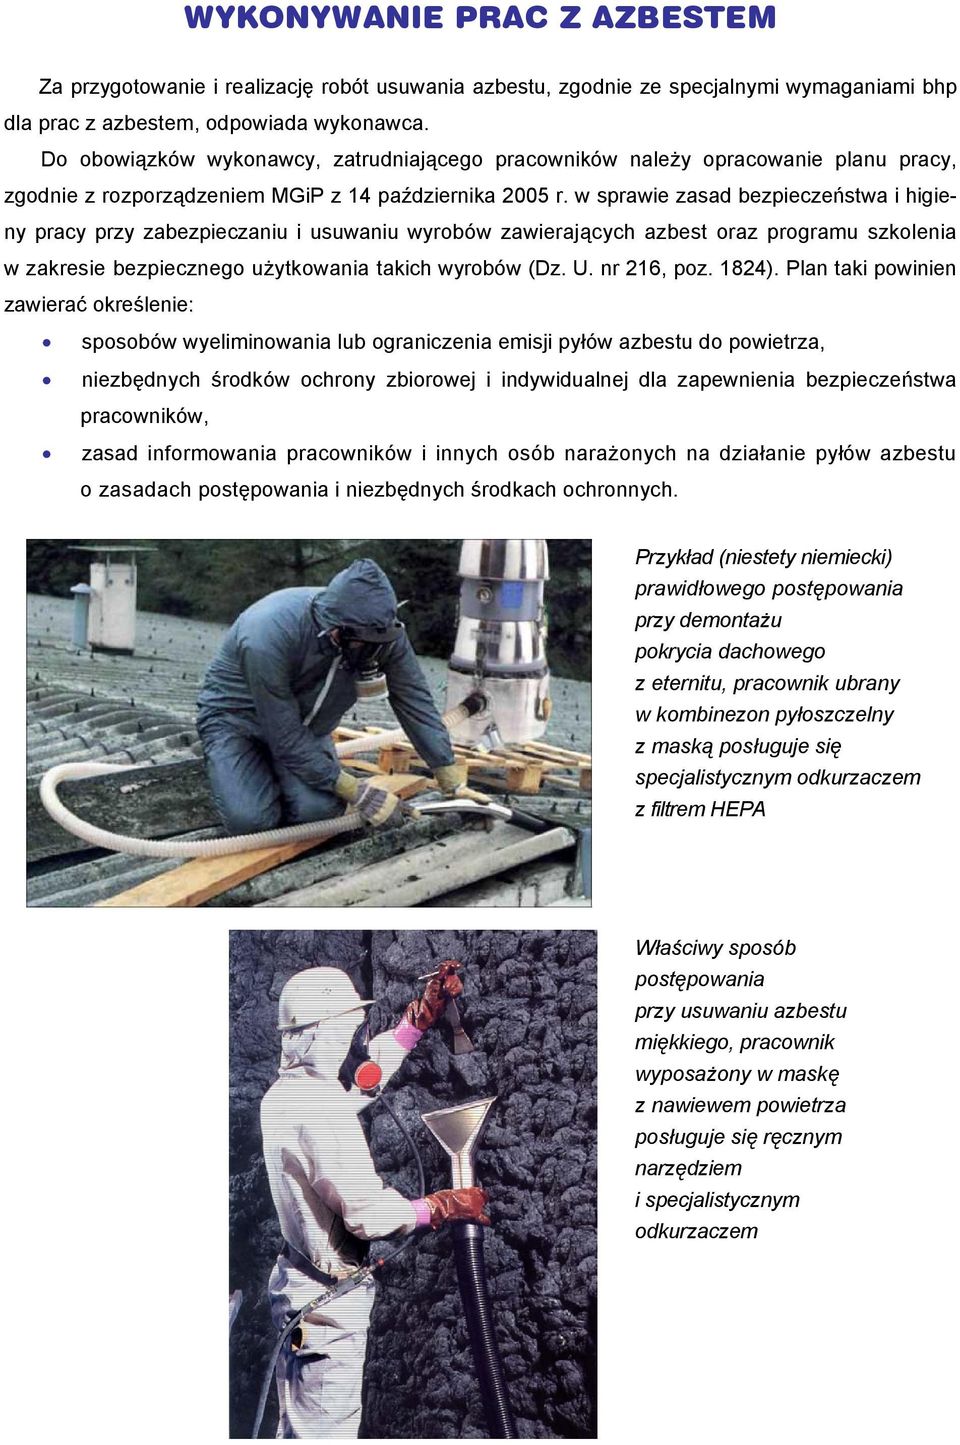 w sprawie zasad bezpieczeństwa i higieny pracy przy zabezpieczaniu i usuwaniu wyrobów zawierających azbest oraz programu szkolenia w zakresie bezpiecznego użytkowania takich wyrobów (Dz. U.